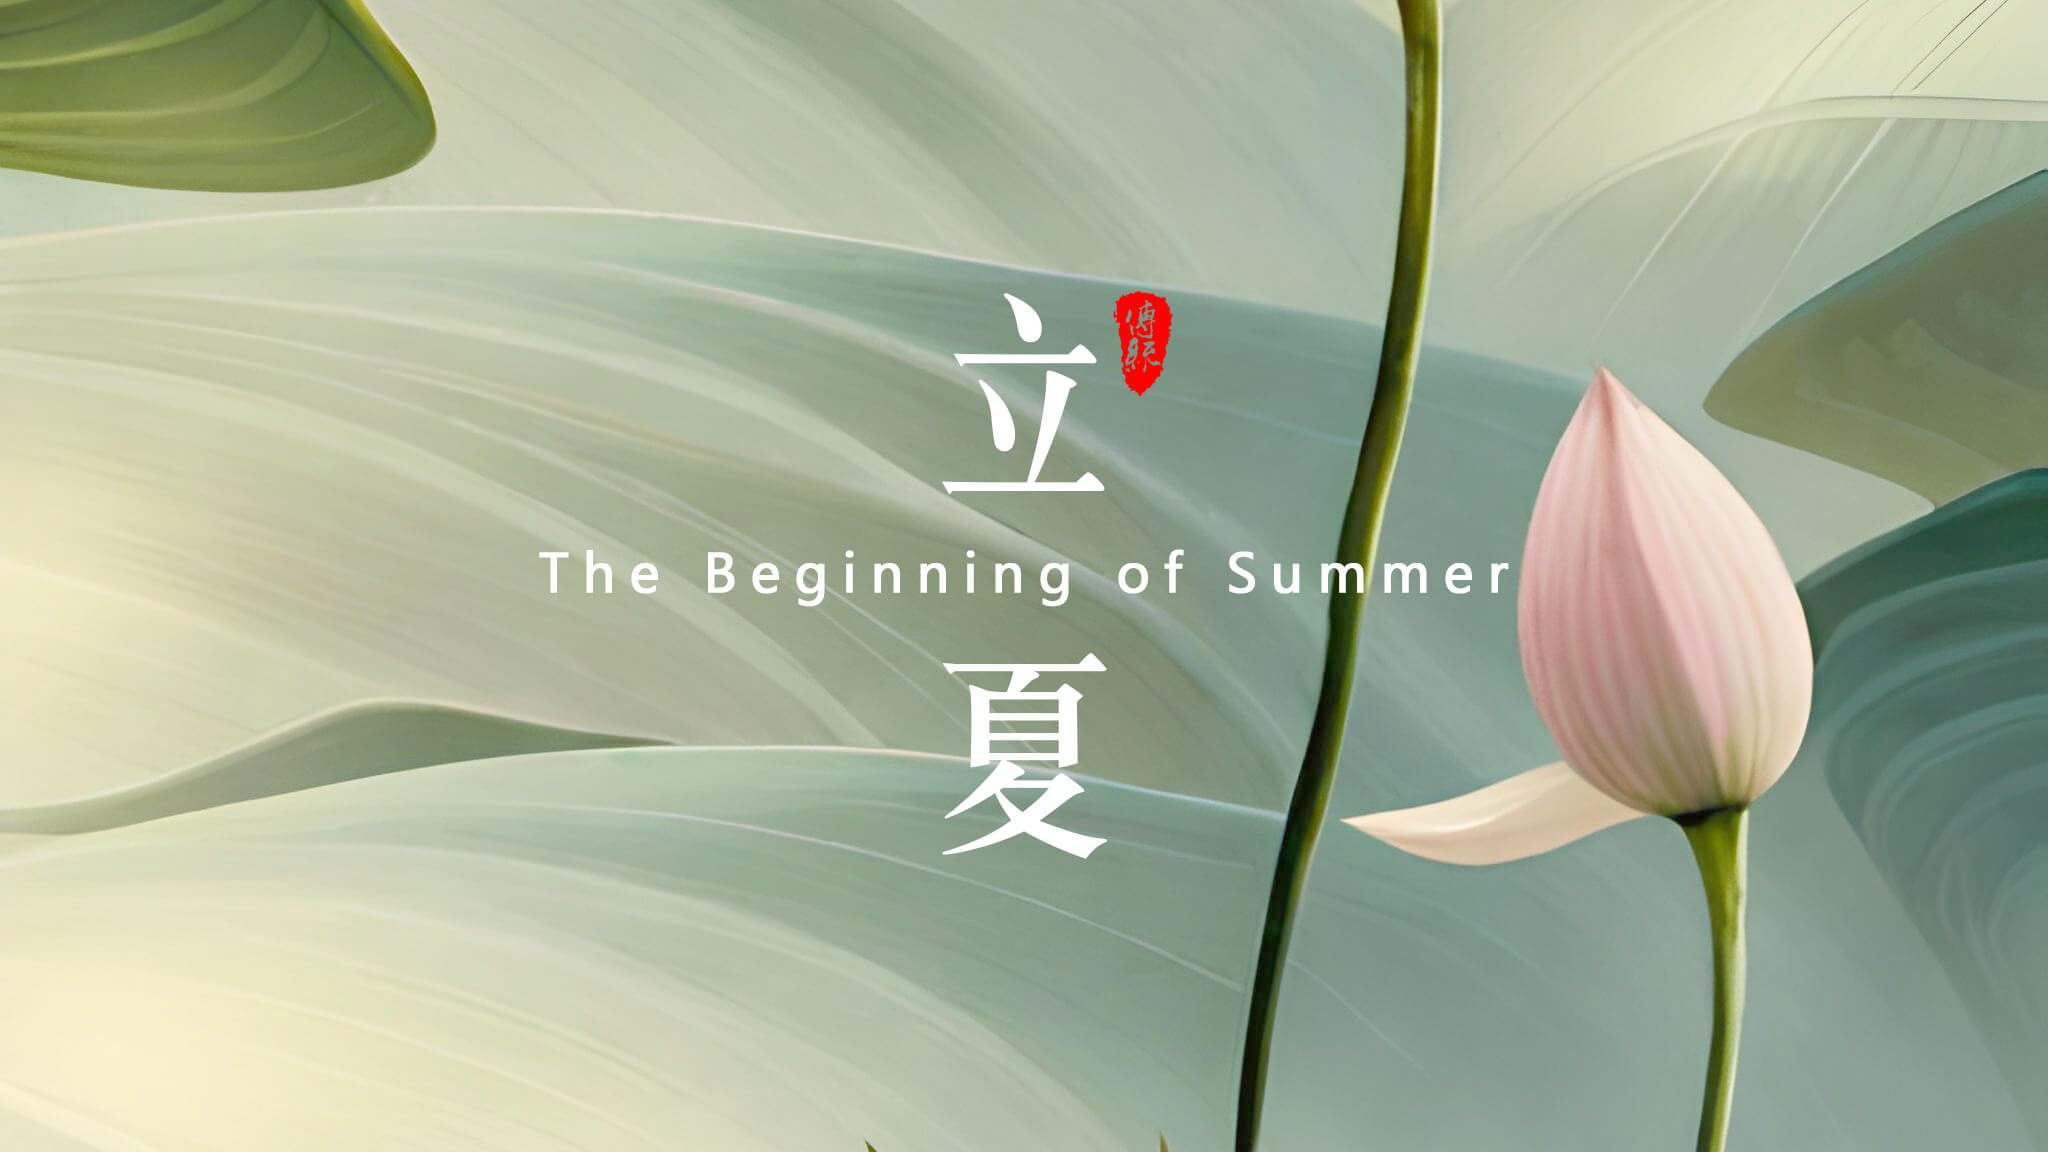  点击关注 | 夏日你好     荷风疏影立夏时  神清气正好运来       小荷才露尖尖角，  早有蜻蜓立上头来！    立夏来临，春天已经悄悄地离开了我们。在这个节气里，气温逐渐升高，万物开始生长茁壮，人们也开始享受温暖阳光的照耀。在中国传统文化中，立夏是一个重要的节气，它标志着夏天的正式开始，并且意味着大自然的新生和万物的复苏。       在立夏这一天，许多地方都有庆祝活动。人们会去登高远眺，观赏春景，感受大自然的美好。同时，也有一些地区会举办各种传统祭祀活动，以祈求丰收和平安。无论是庆祝还是祭祀，都体现了中国人民对于自然和生命的敬畏之情。       在立夏这个节气里，人们也开始注意饮食调理。夏季气温高，人体容易出现口渴、出汗等情况，因此，饮食上应该以清淡为主，少吃辛辣和油腻的食物。同时，还应该多吃一些清凉解暑的食物，如绿豆汤、凉拌菜等，以保持身体的健康。       导致皮肤受损，因此，出门时应该涂抹防晒霜，避免紫外线的伤害。同时，也应该注意保持皮肤的湿润和滋润，多喝水、多涂护肤品，以保持皮肤的健康和美丽。总之，立夏是一个重要的节气，它标志着夏天的正式开始，同时也意味着大自然的新生和万物的复苏。    在这个节气里，人们应该注意饮食调理、防晒保湿，以保持身体的健康和美丽。让我们一起迎接夏天的到来，享受大自然的美好吧！    摄/排/设/撰/曹丘文旭         01   ​           时光知夏来  